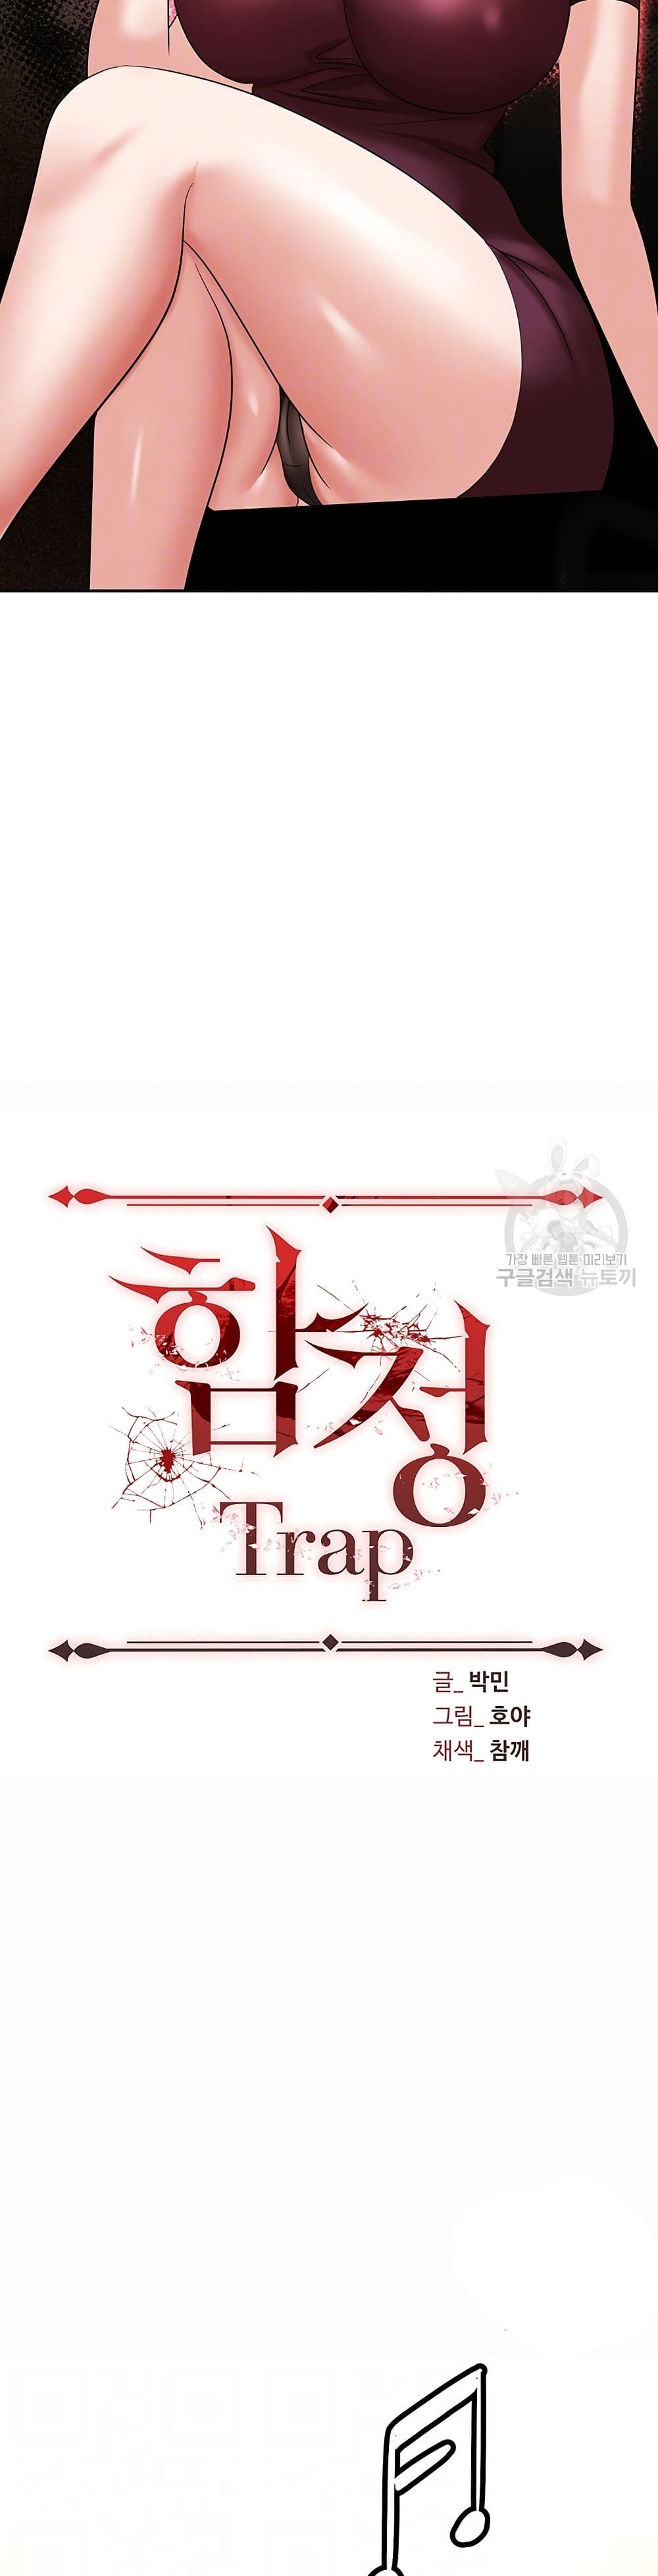 Trap 63-63